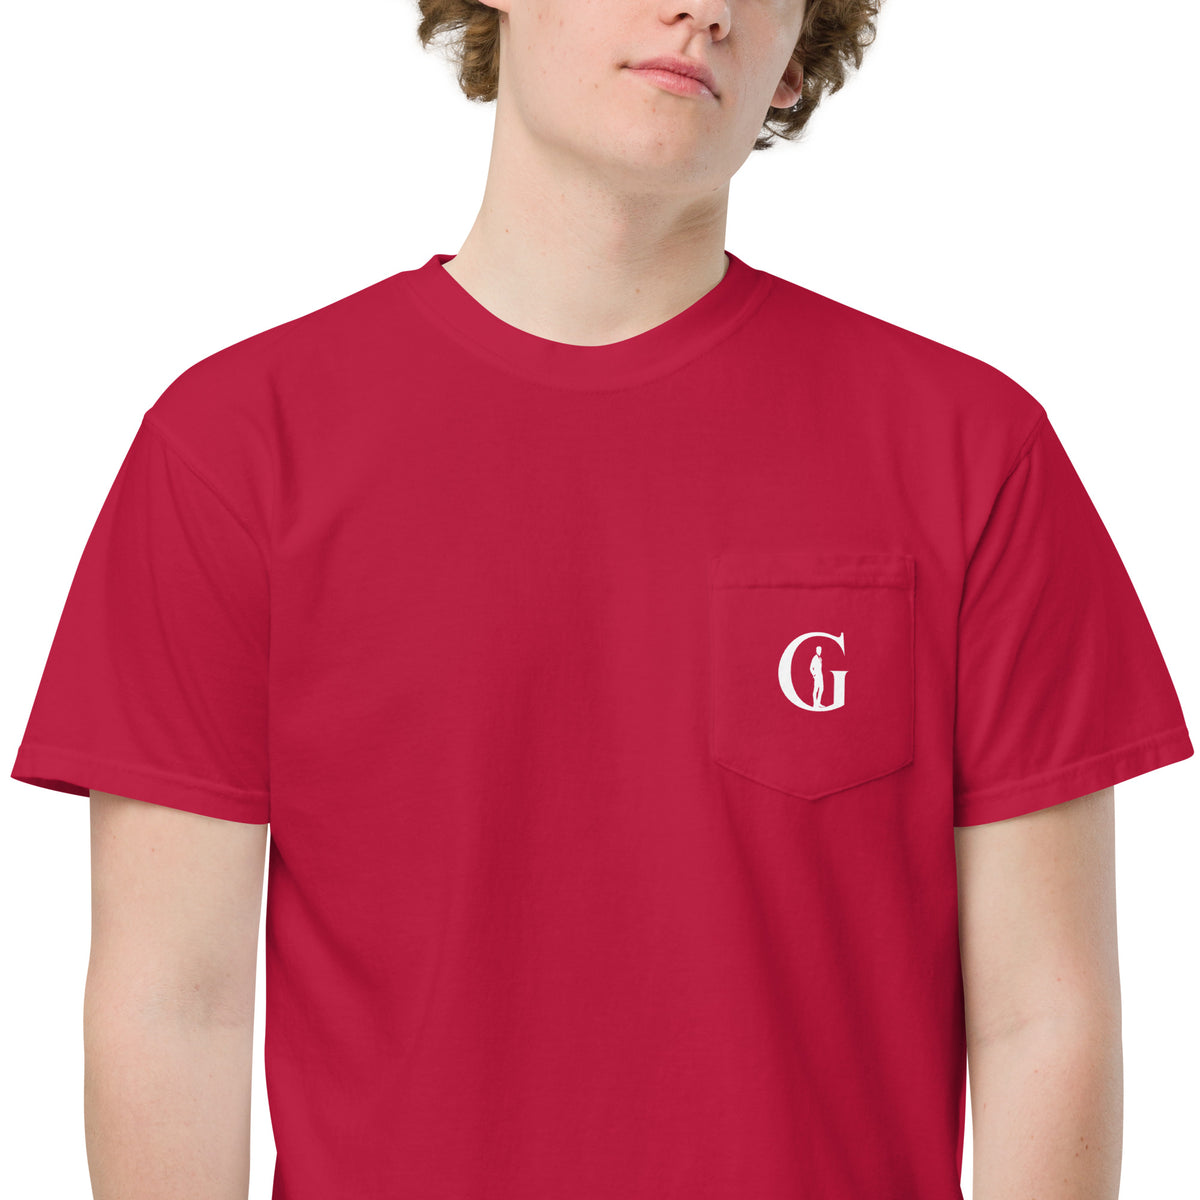 Gentlemen dyed pocket t-shirt